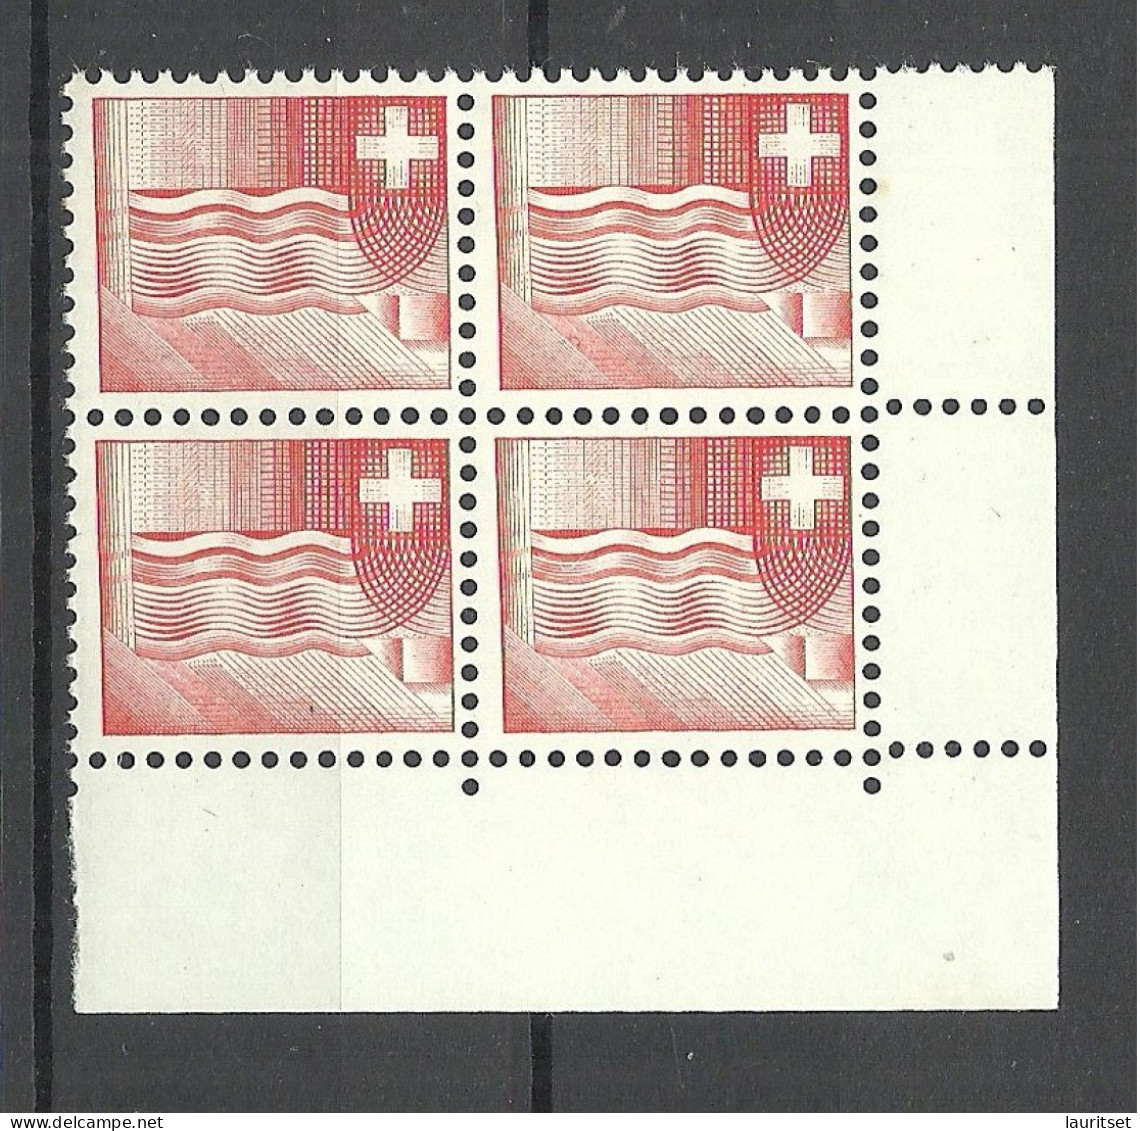 SCHWEIZ Switzerland 1964 Essay Druckprobe Muster As 4-block MNH - Errores & Curiosidades